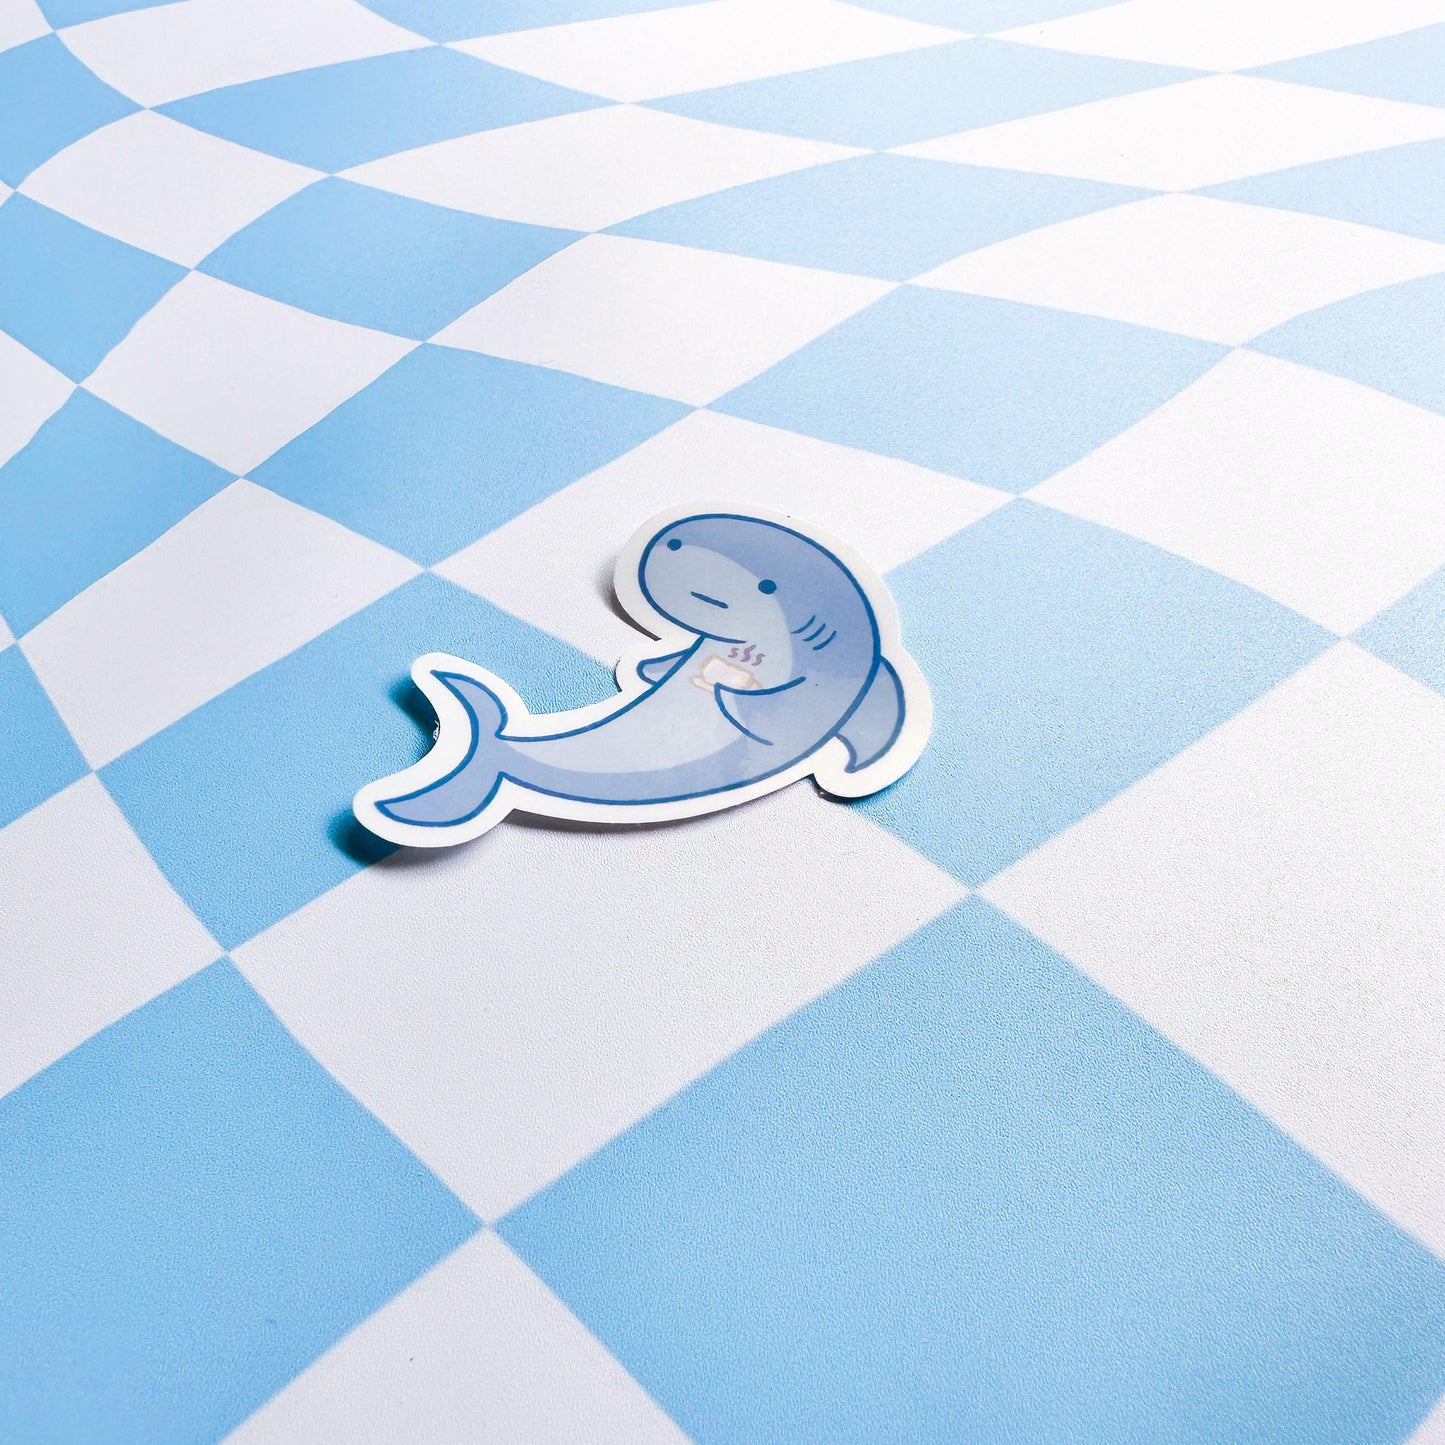 Shark Drinking Tea Sticker - Arttay Designs